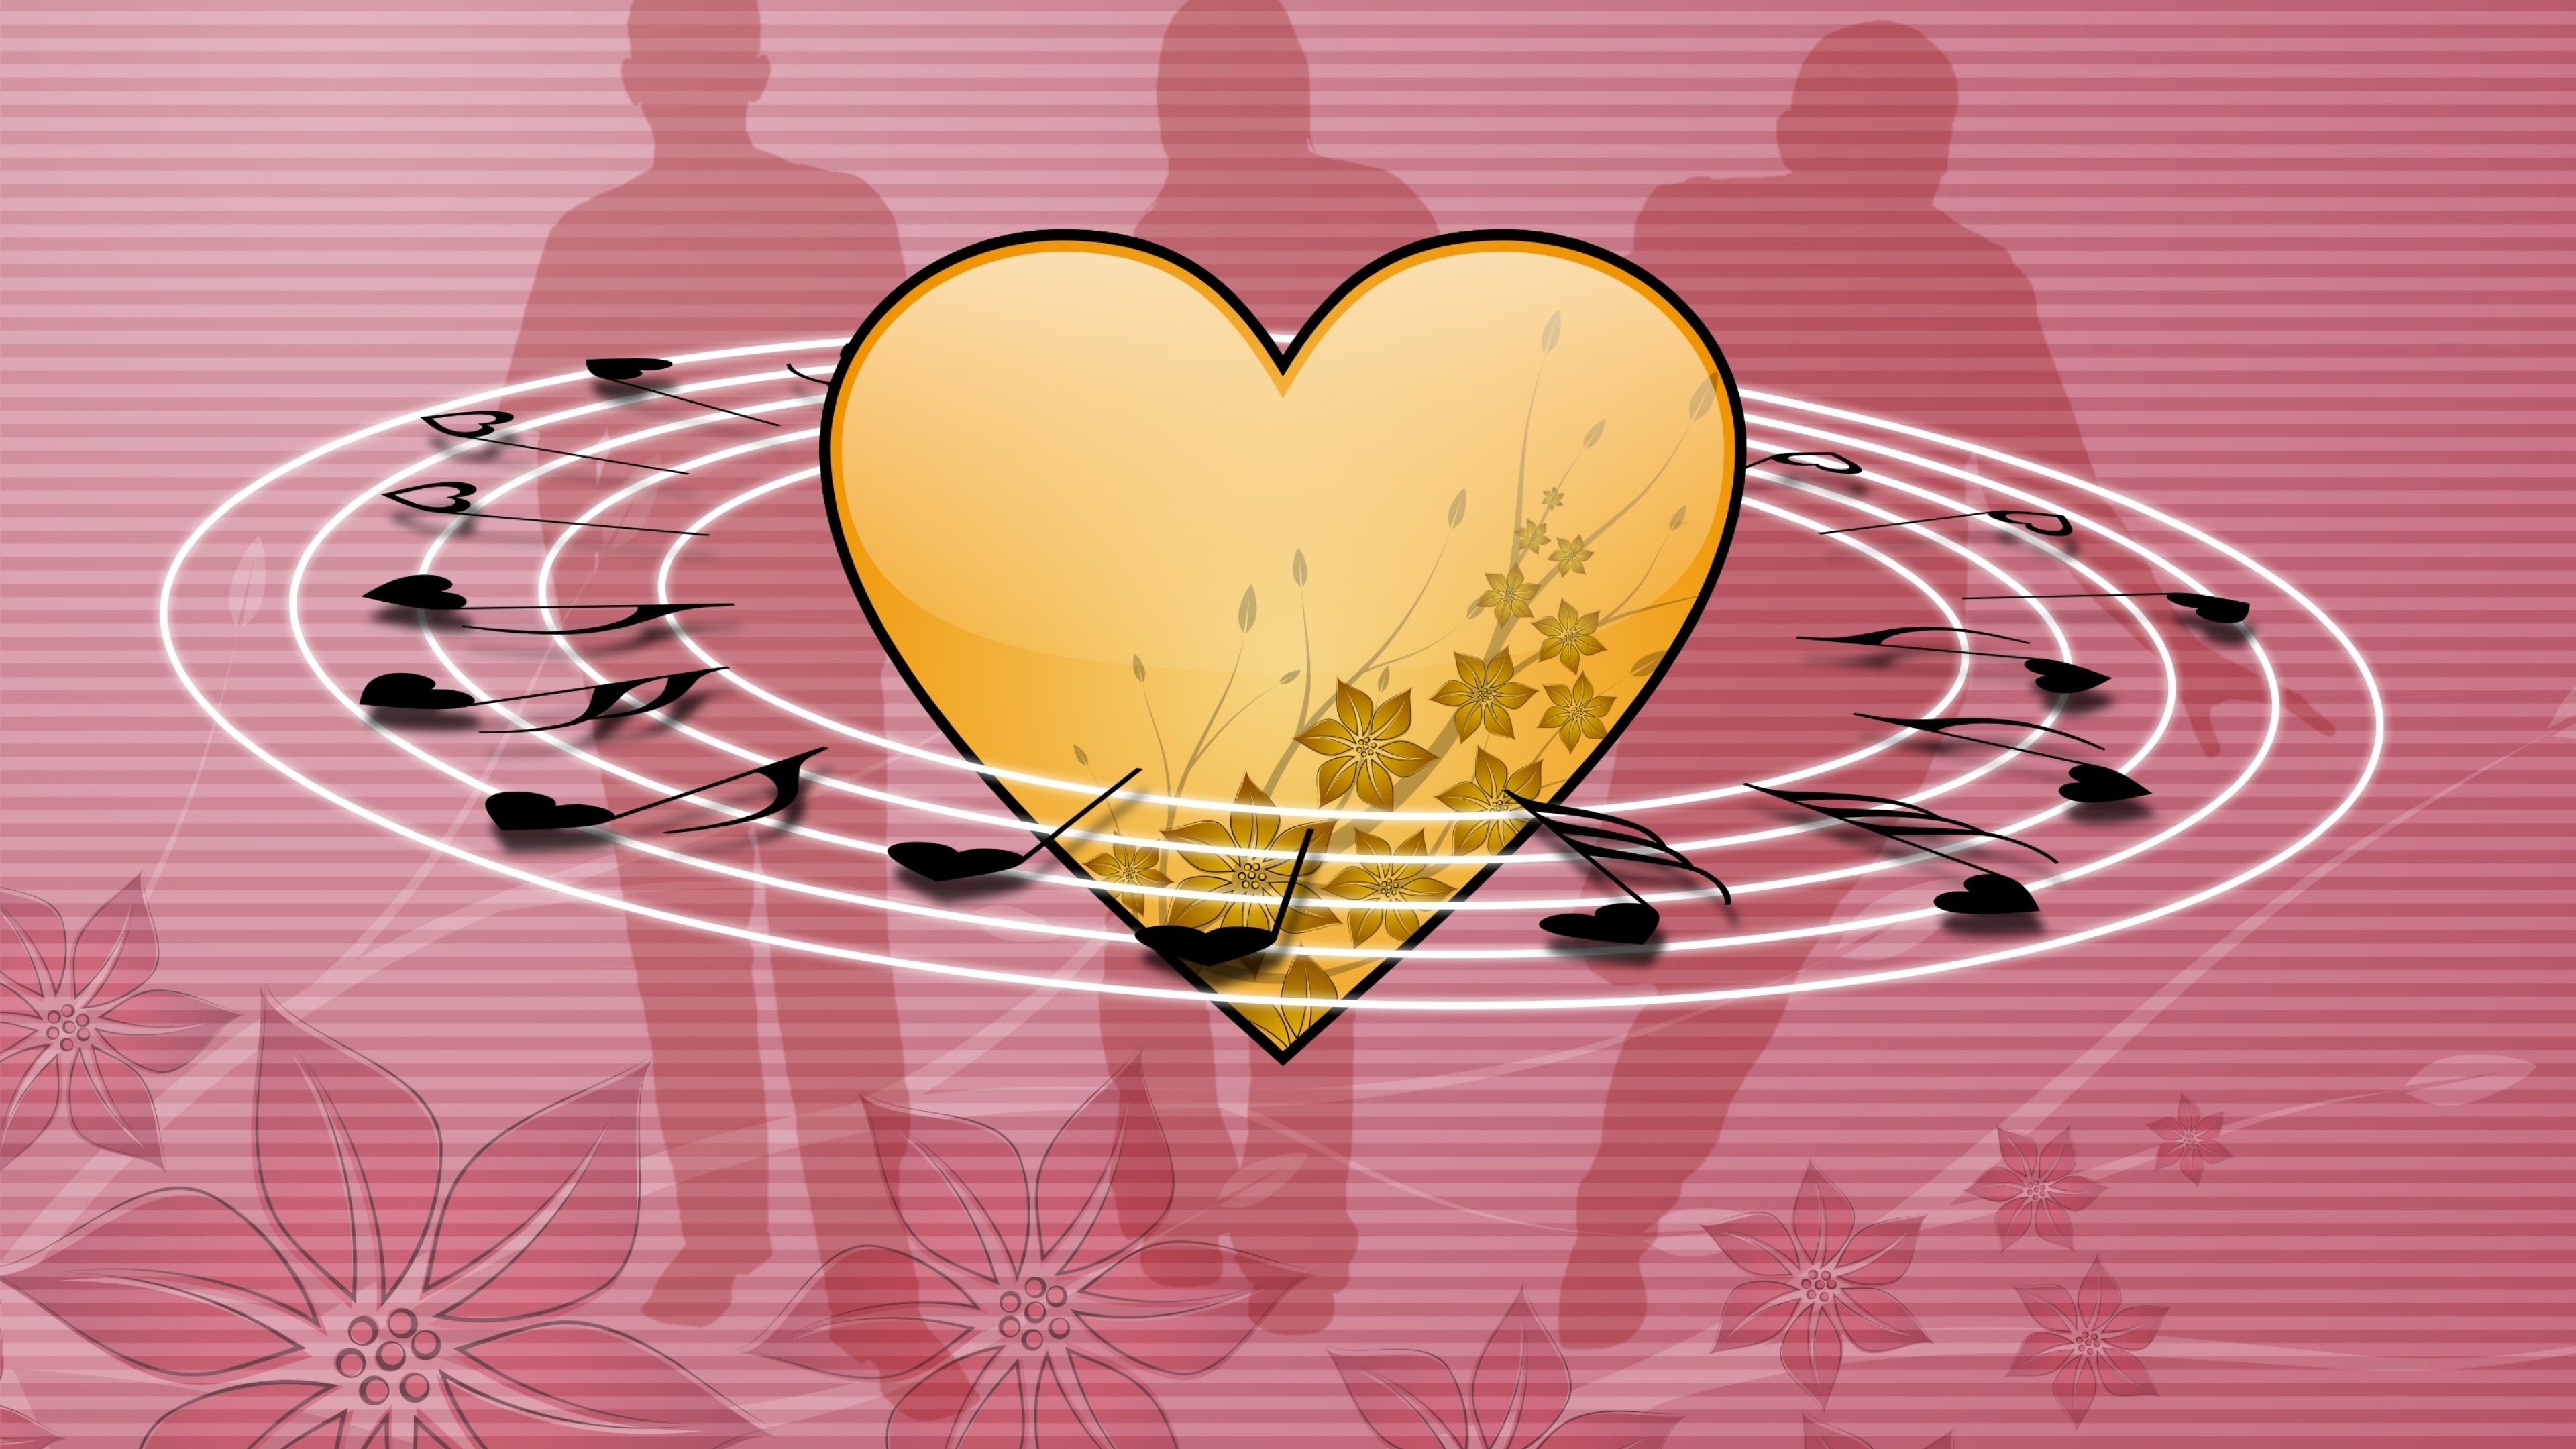 Сердце пение. Музыкальное сердце. Сердечки картинки. Рисунок на музыкальную тему в сердце. Музыкальное сердечко.